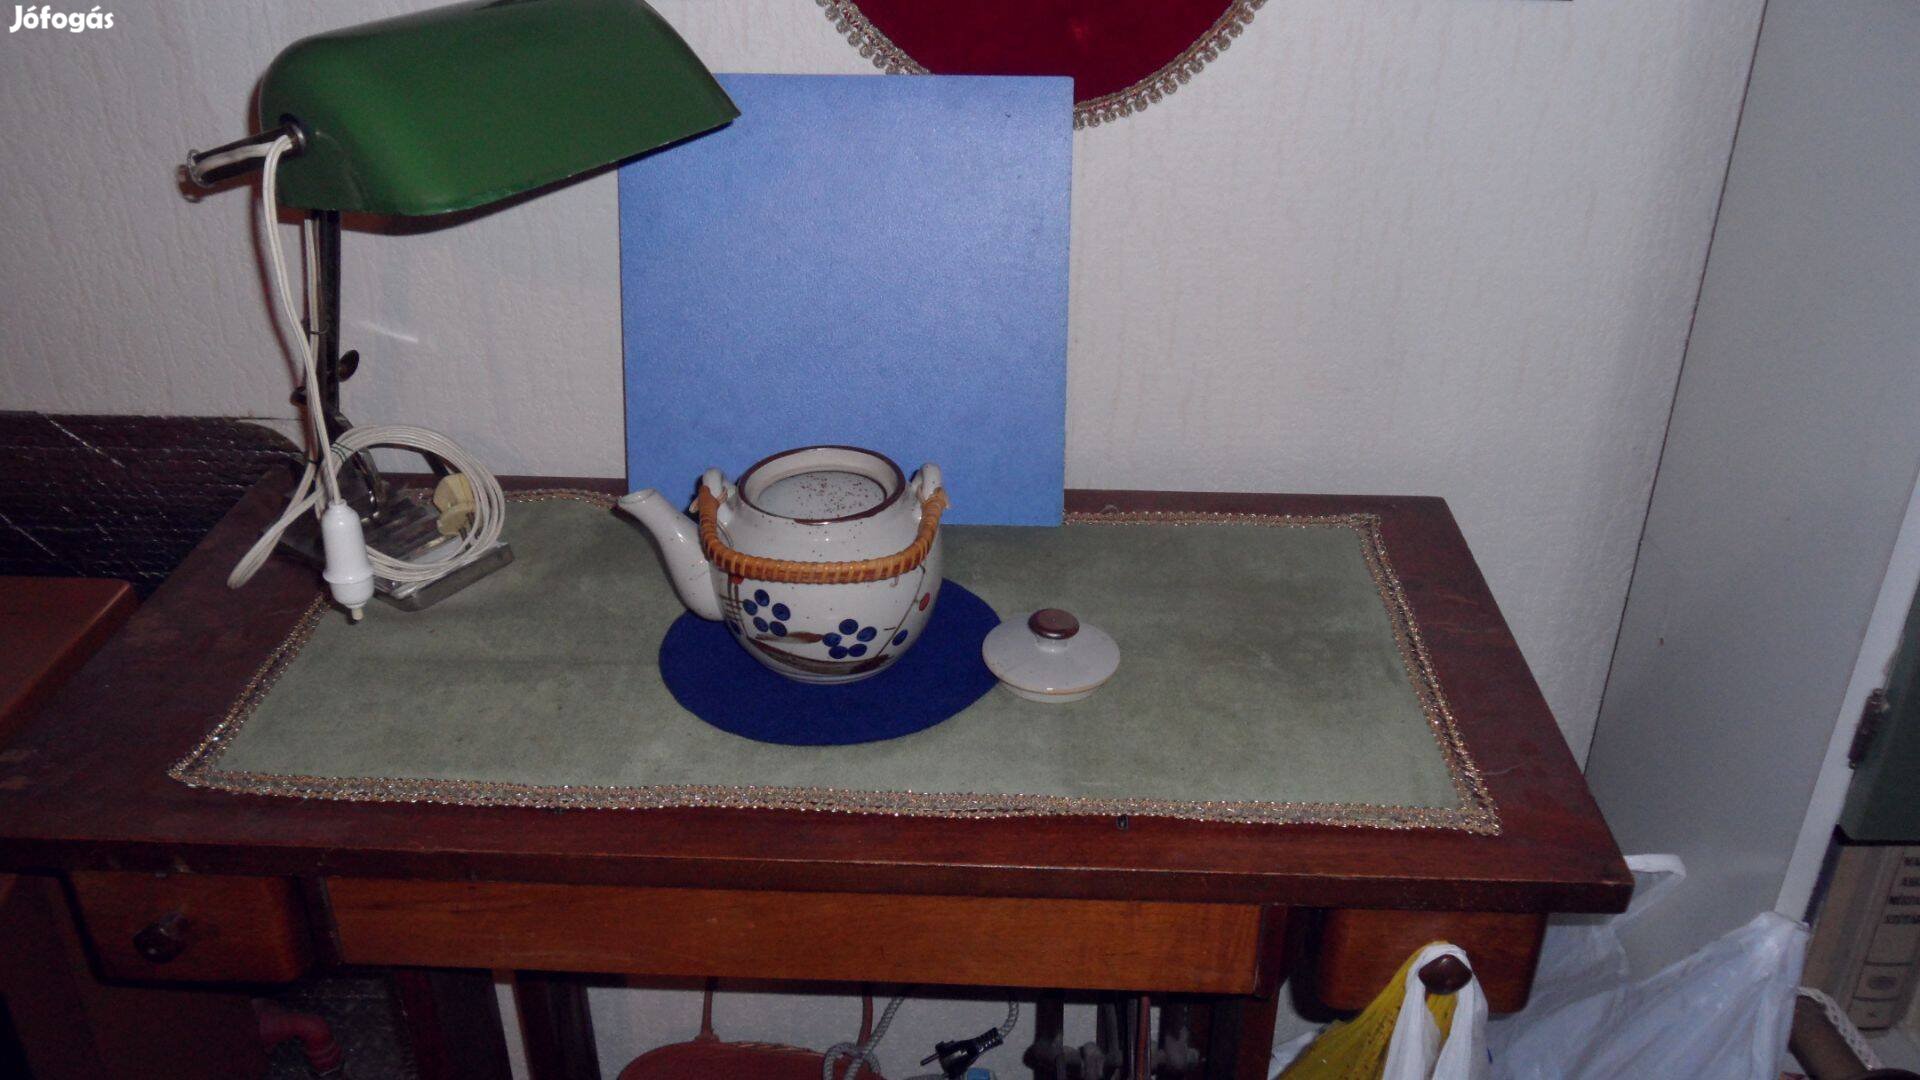 Tea kiöntő tároló kancsó festett majolika, nádazott fogantyúval 1 L